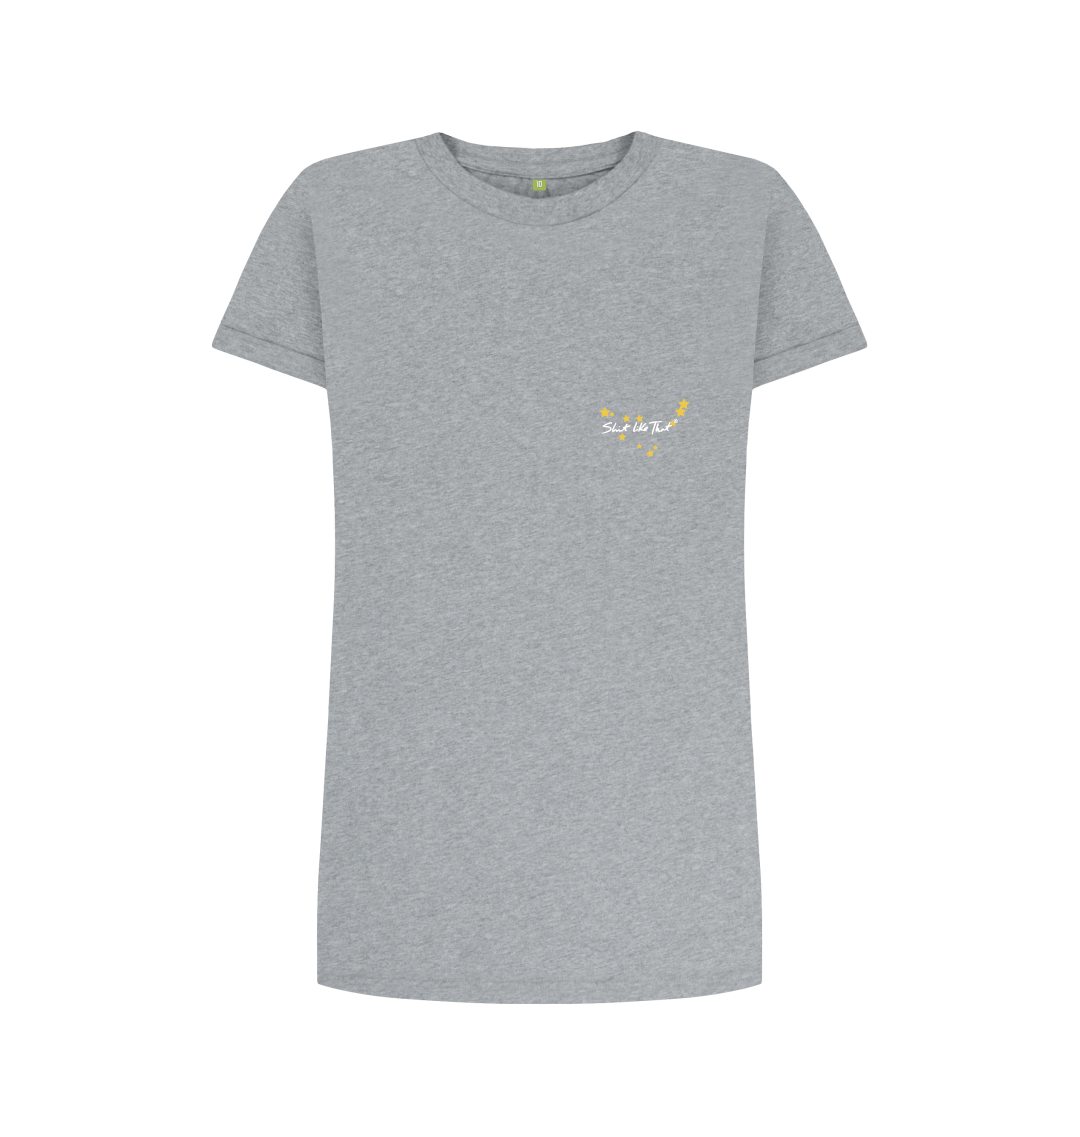 Women's Lightweight Cotton T-Shirt Dress - CottonMill